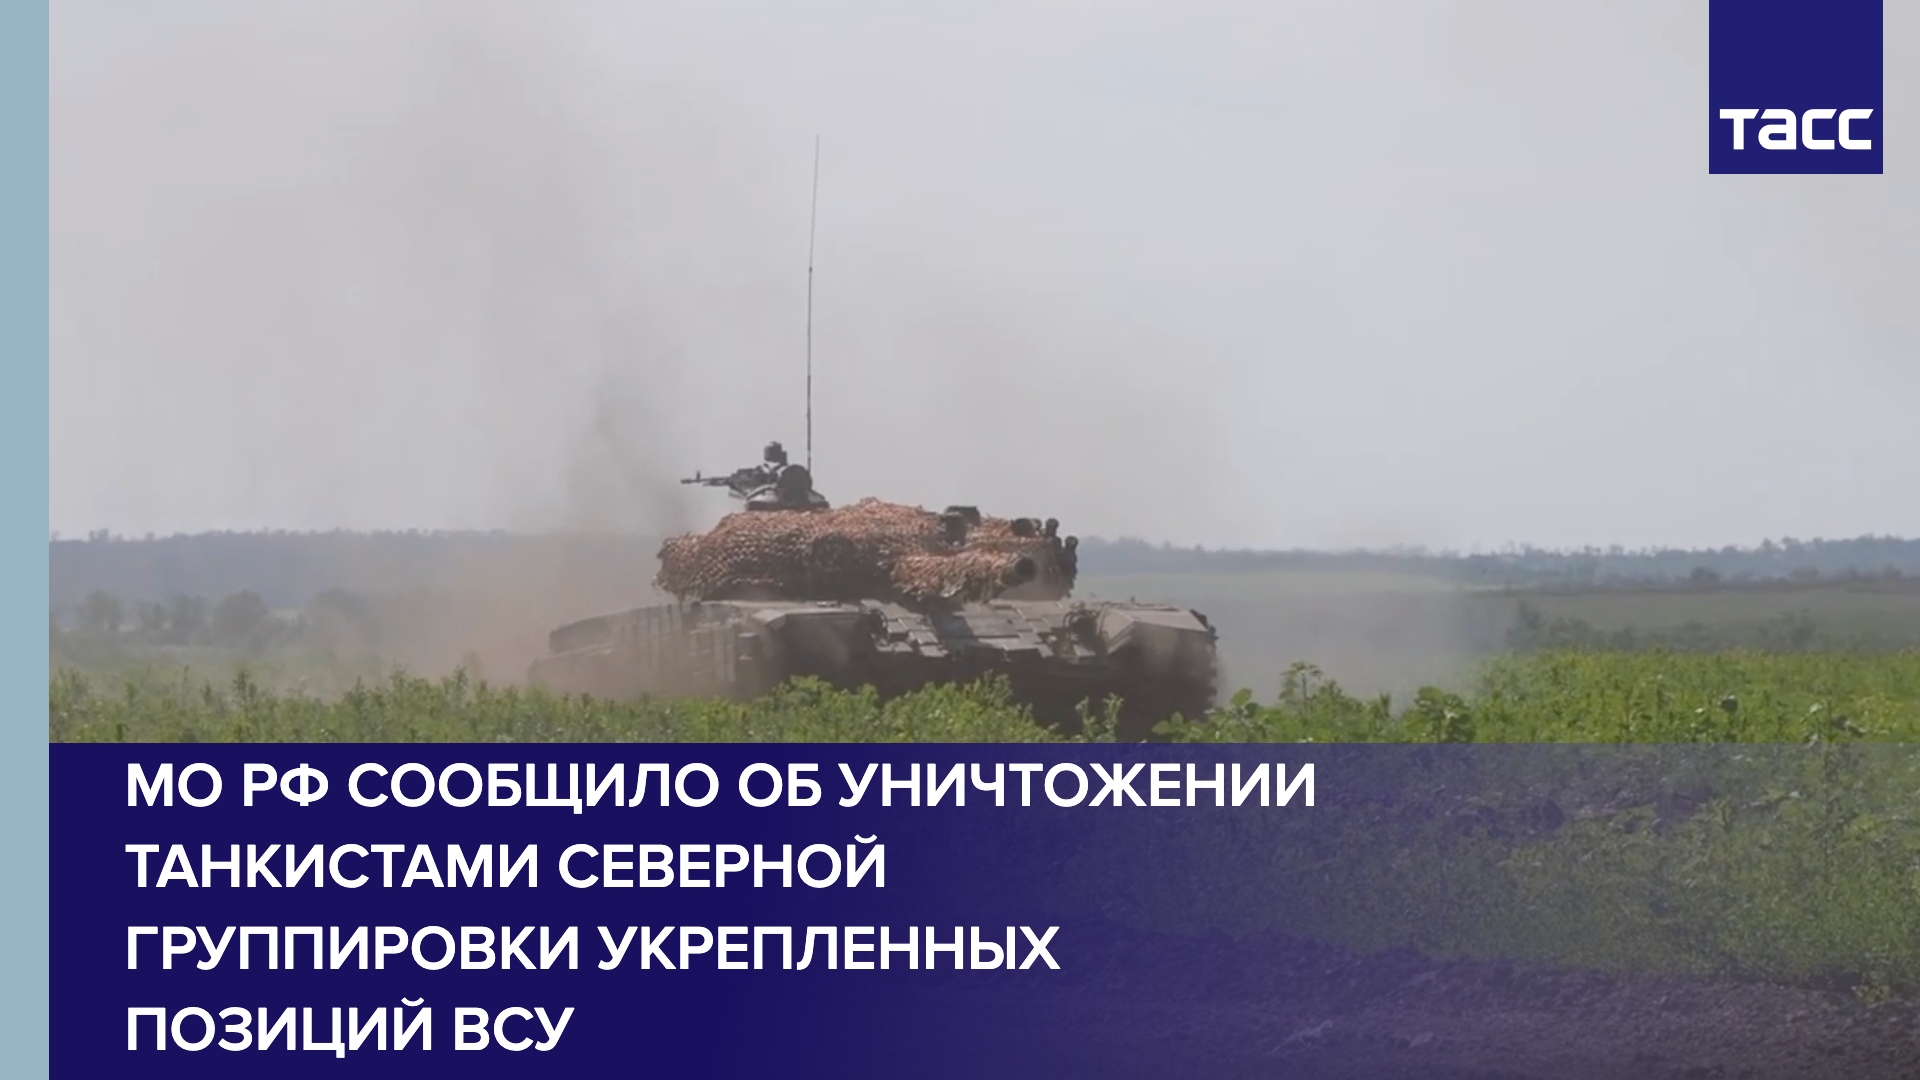 МО РФ сообщило об уничтожении танкистами Северной группировки укрепленных позиций ВСУ